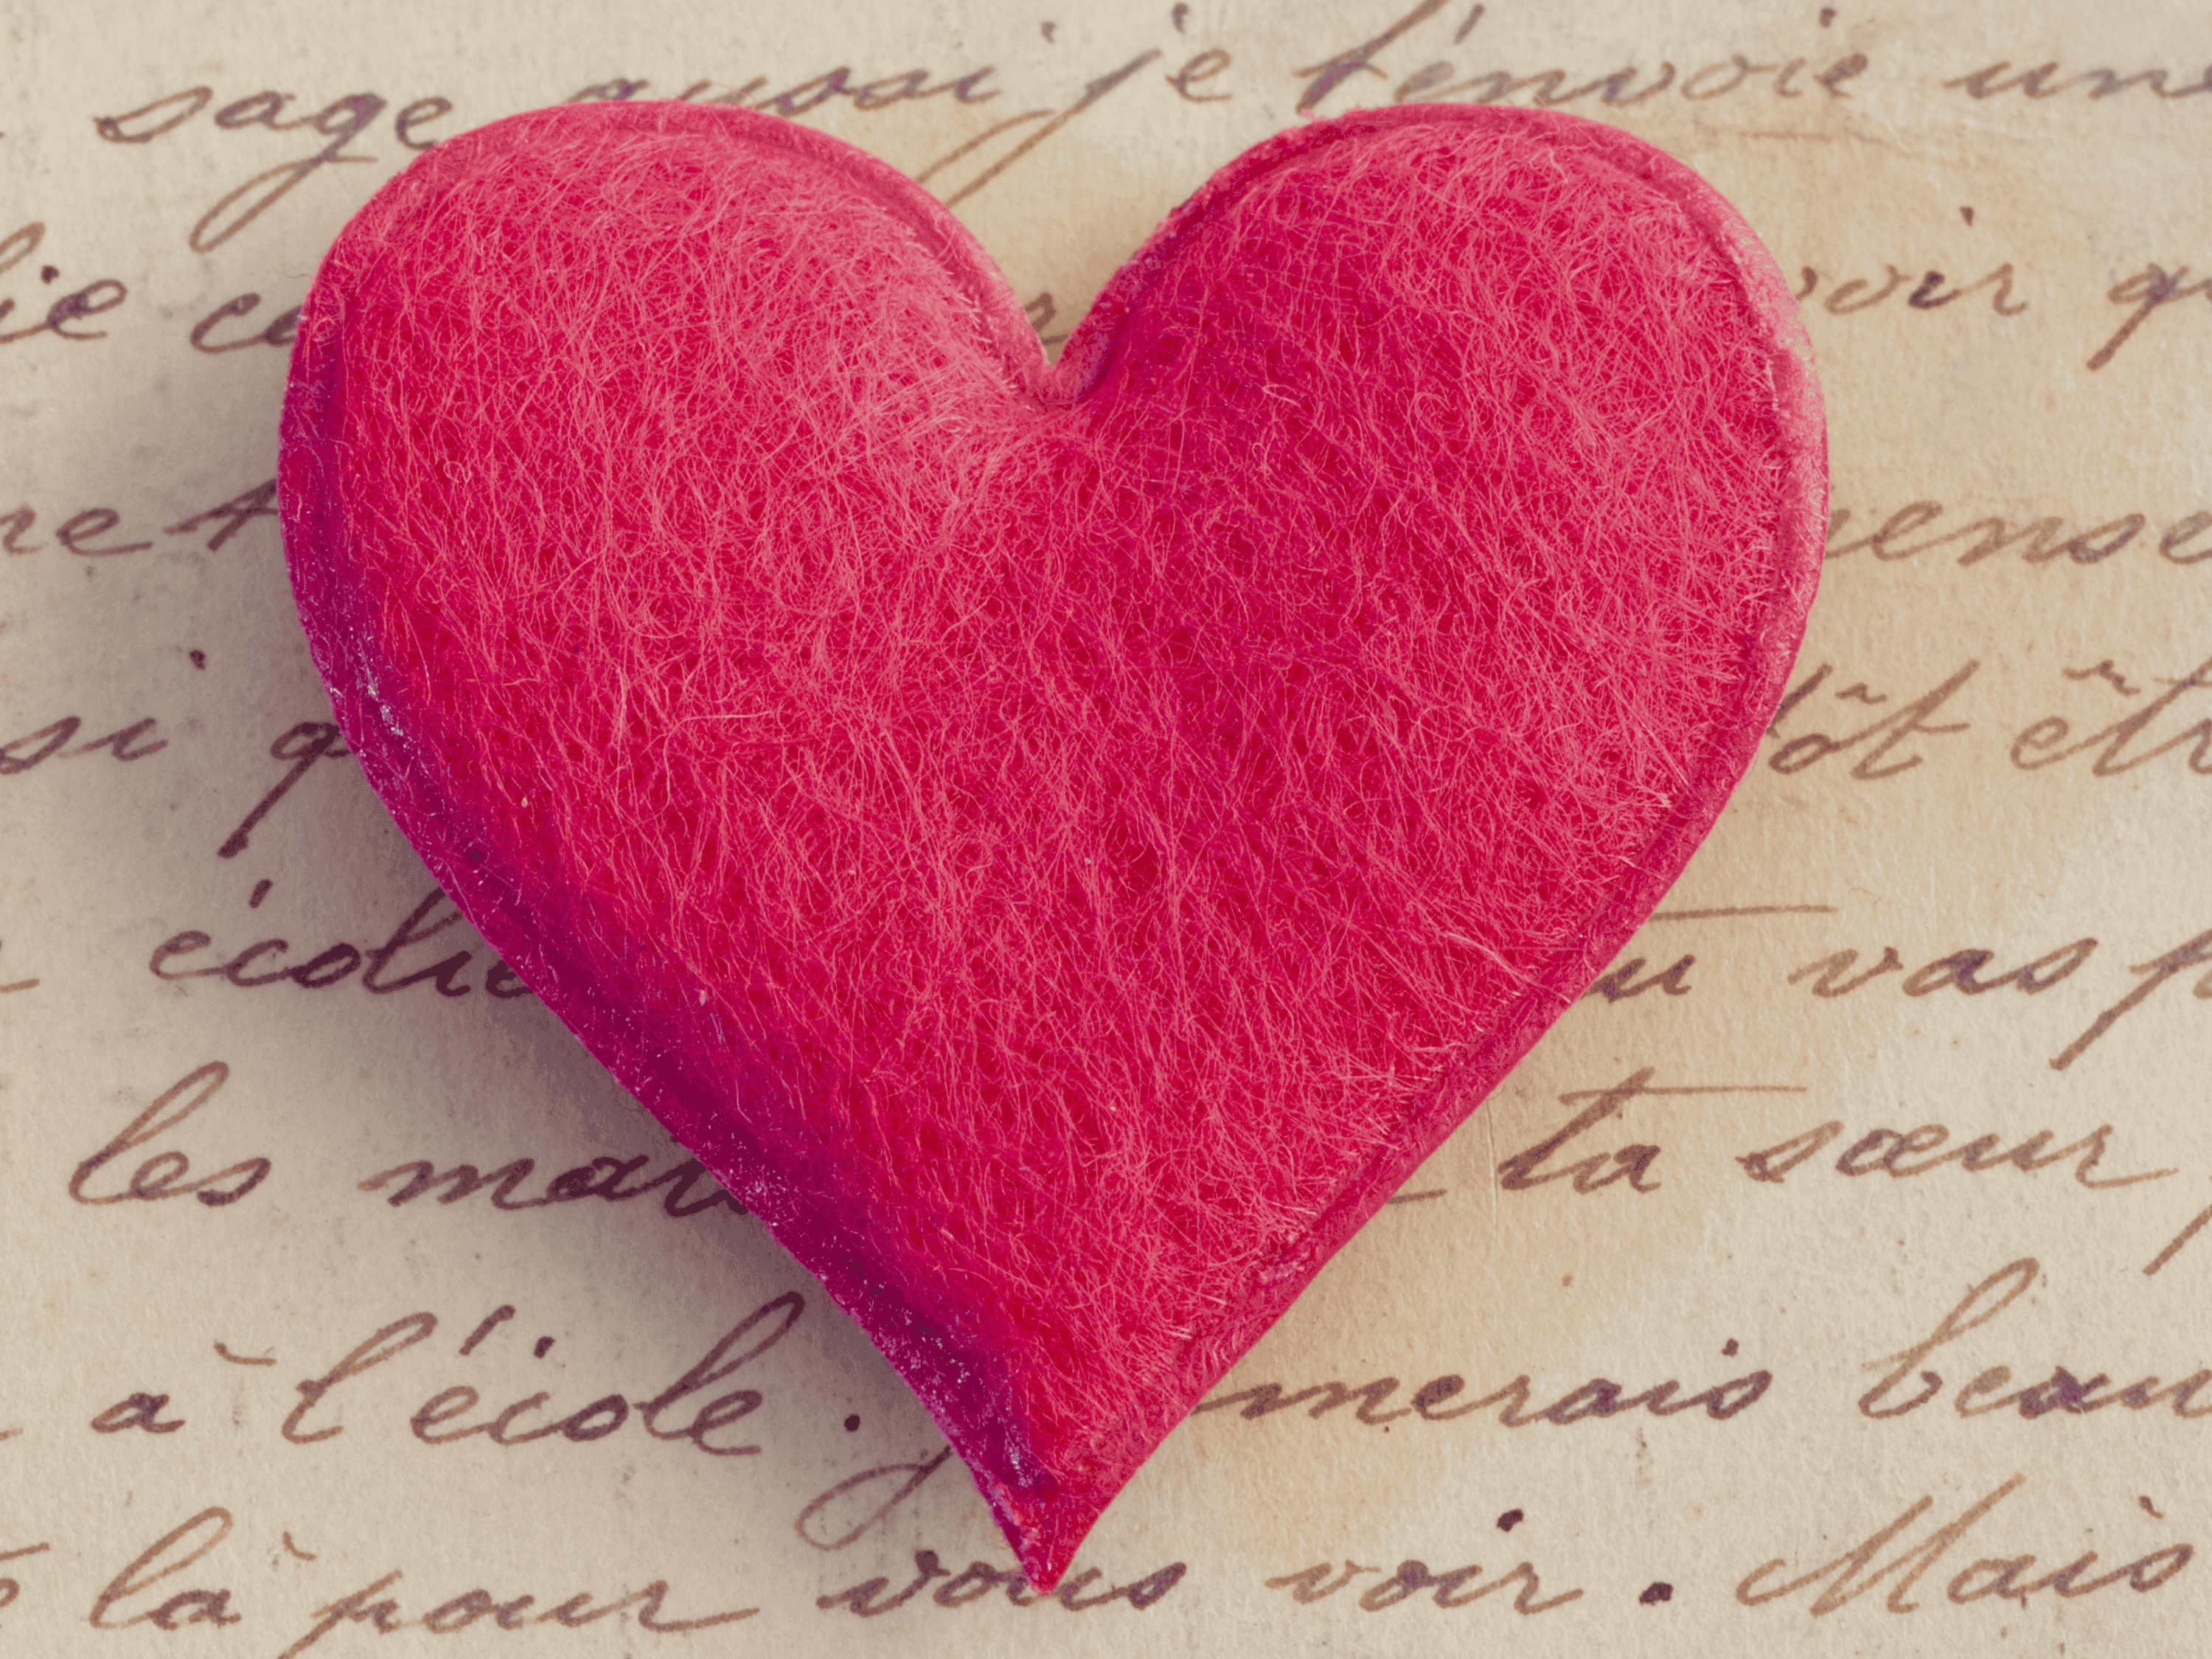 Ein leuchtend rotes, herzförmiges Objekt mit auffälliger Textur befindet sich in der Mitte eines Hintergrunds aus altem Papier mit eleganten, handgeschriebenen Buchstaben, die eine romantische oder nostalgische Stimmung vermitteln.